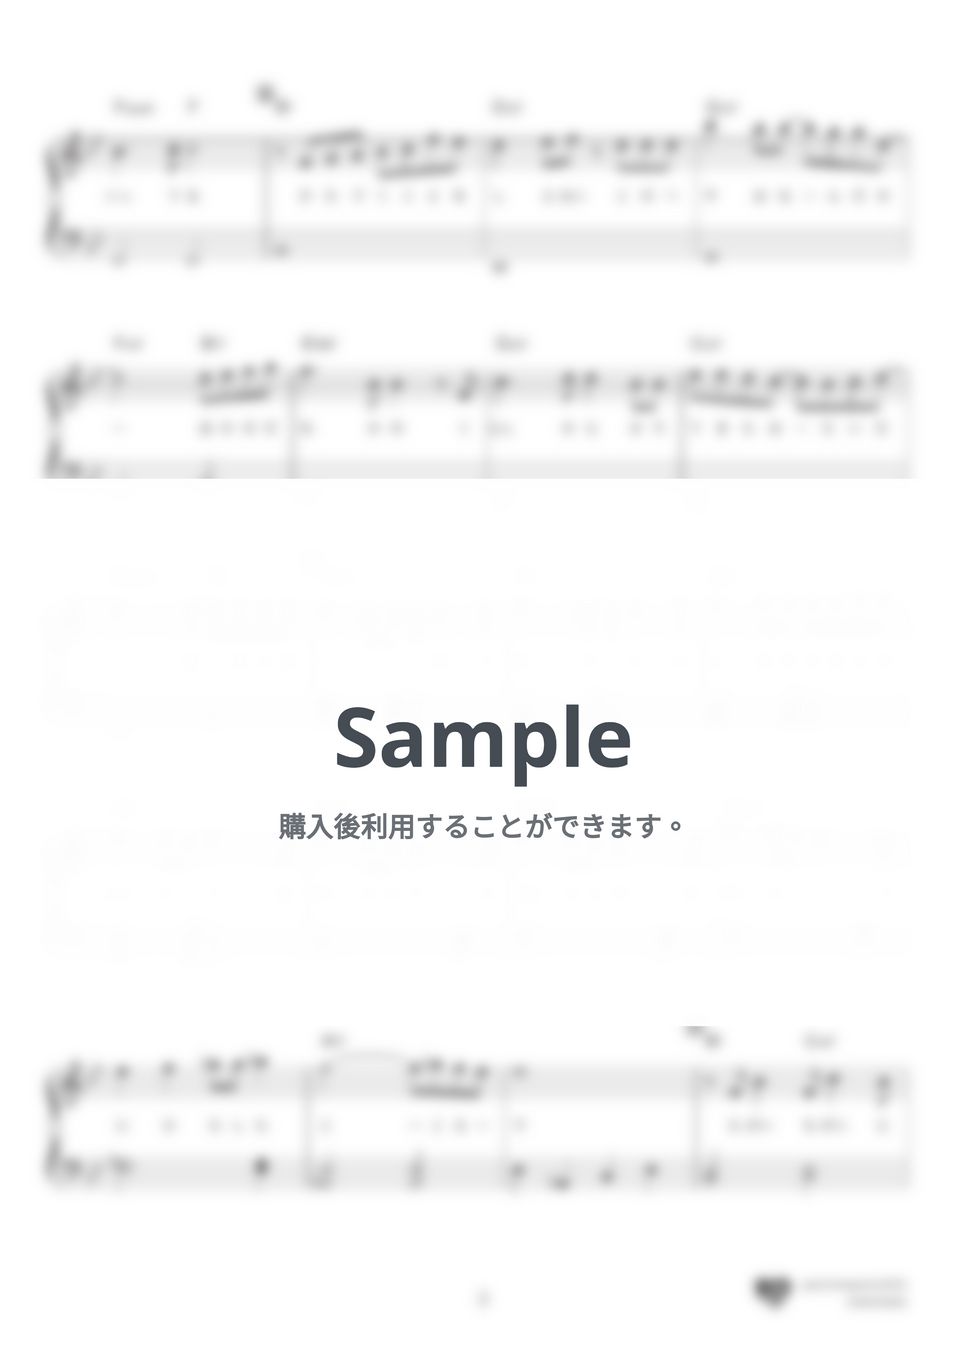 Official髭男dism - パラボラ (「カルピスウォーター」CMソング) by 楽譜仕事人_高橋美夕己